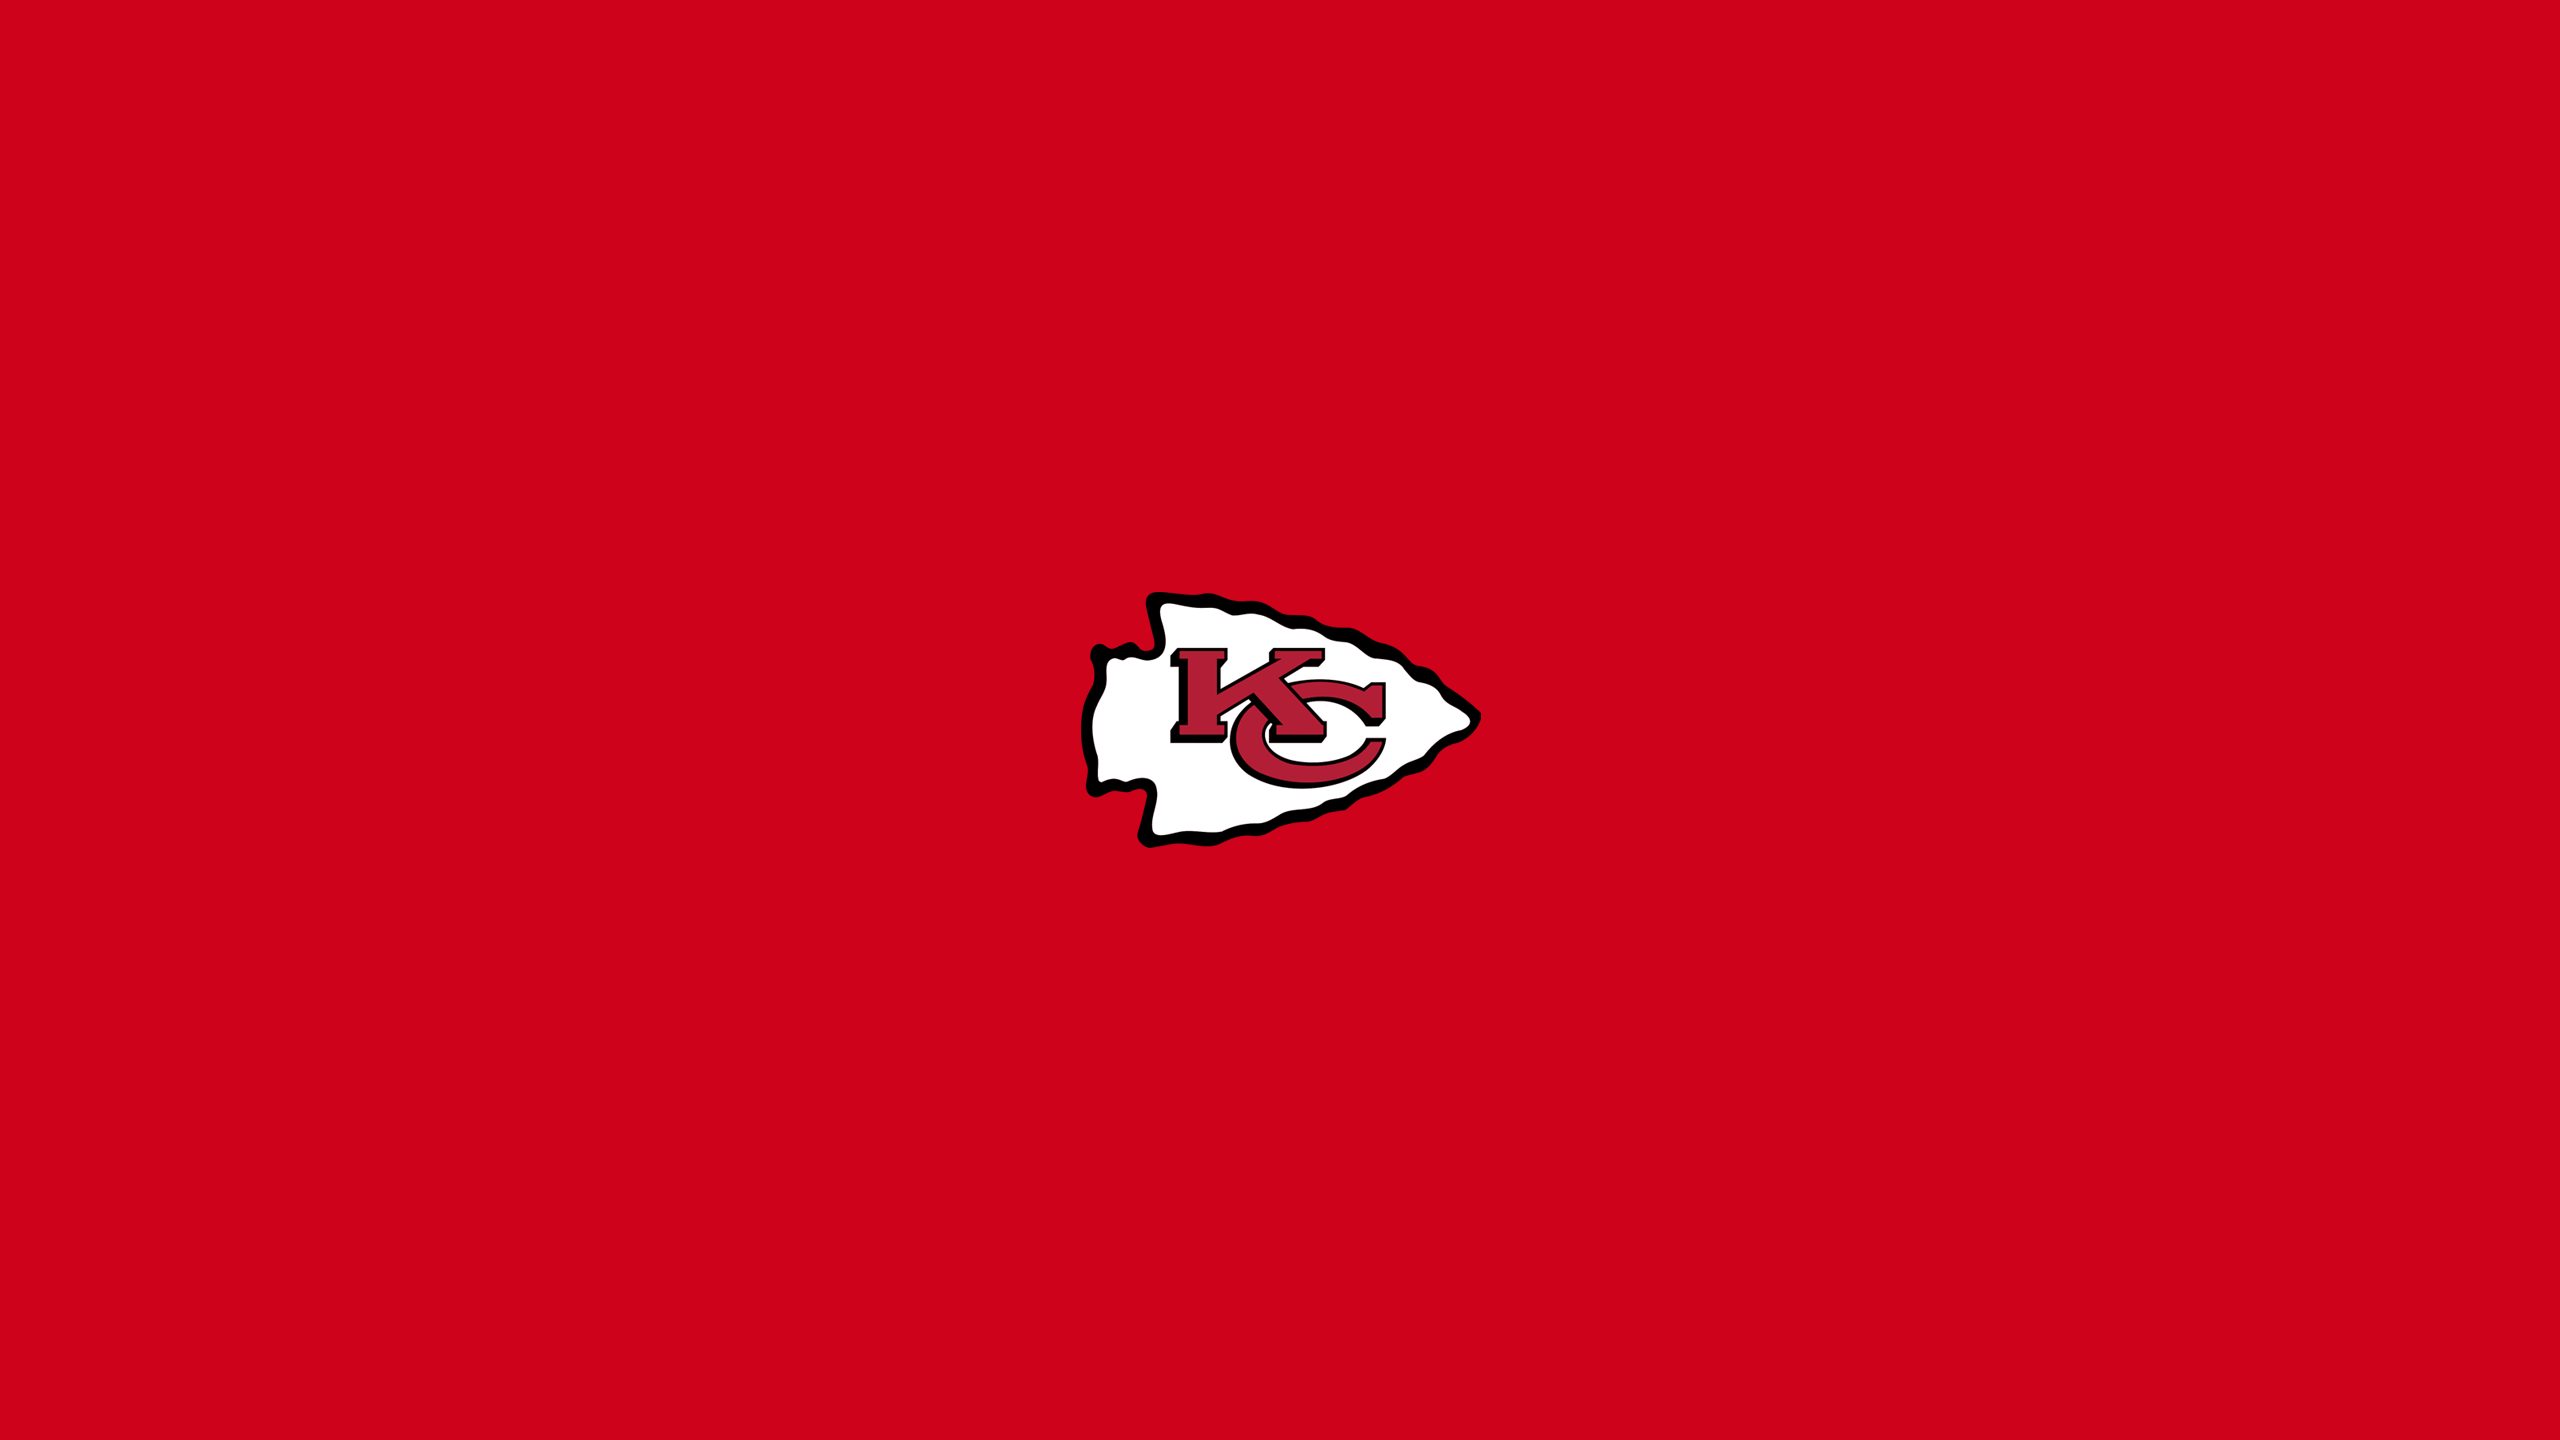 Kansas City Chiefs - NFL - Square Bettor